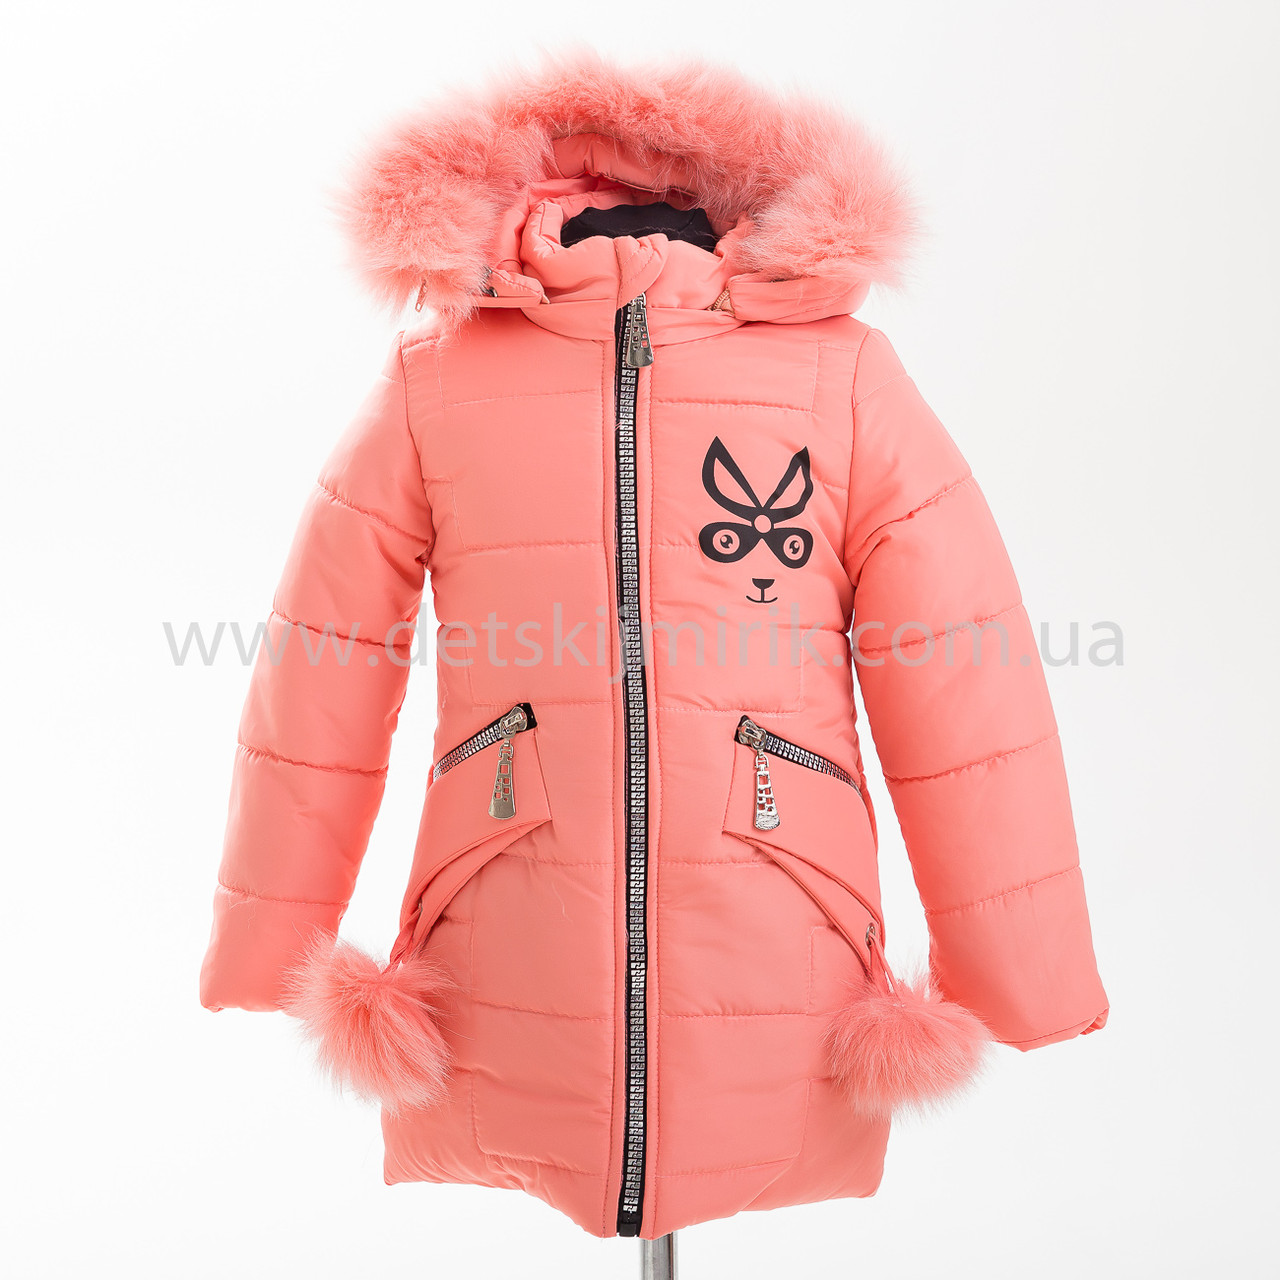 Зимова куртка для дівчинки "Злата", Зима 2019 року